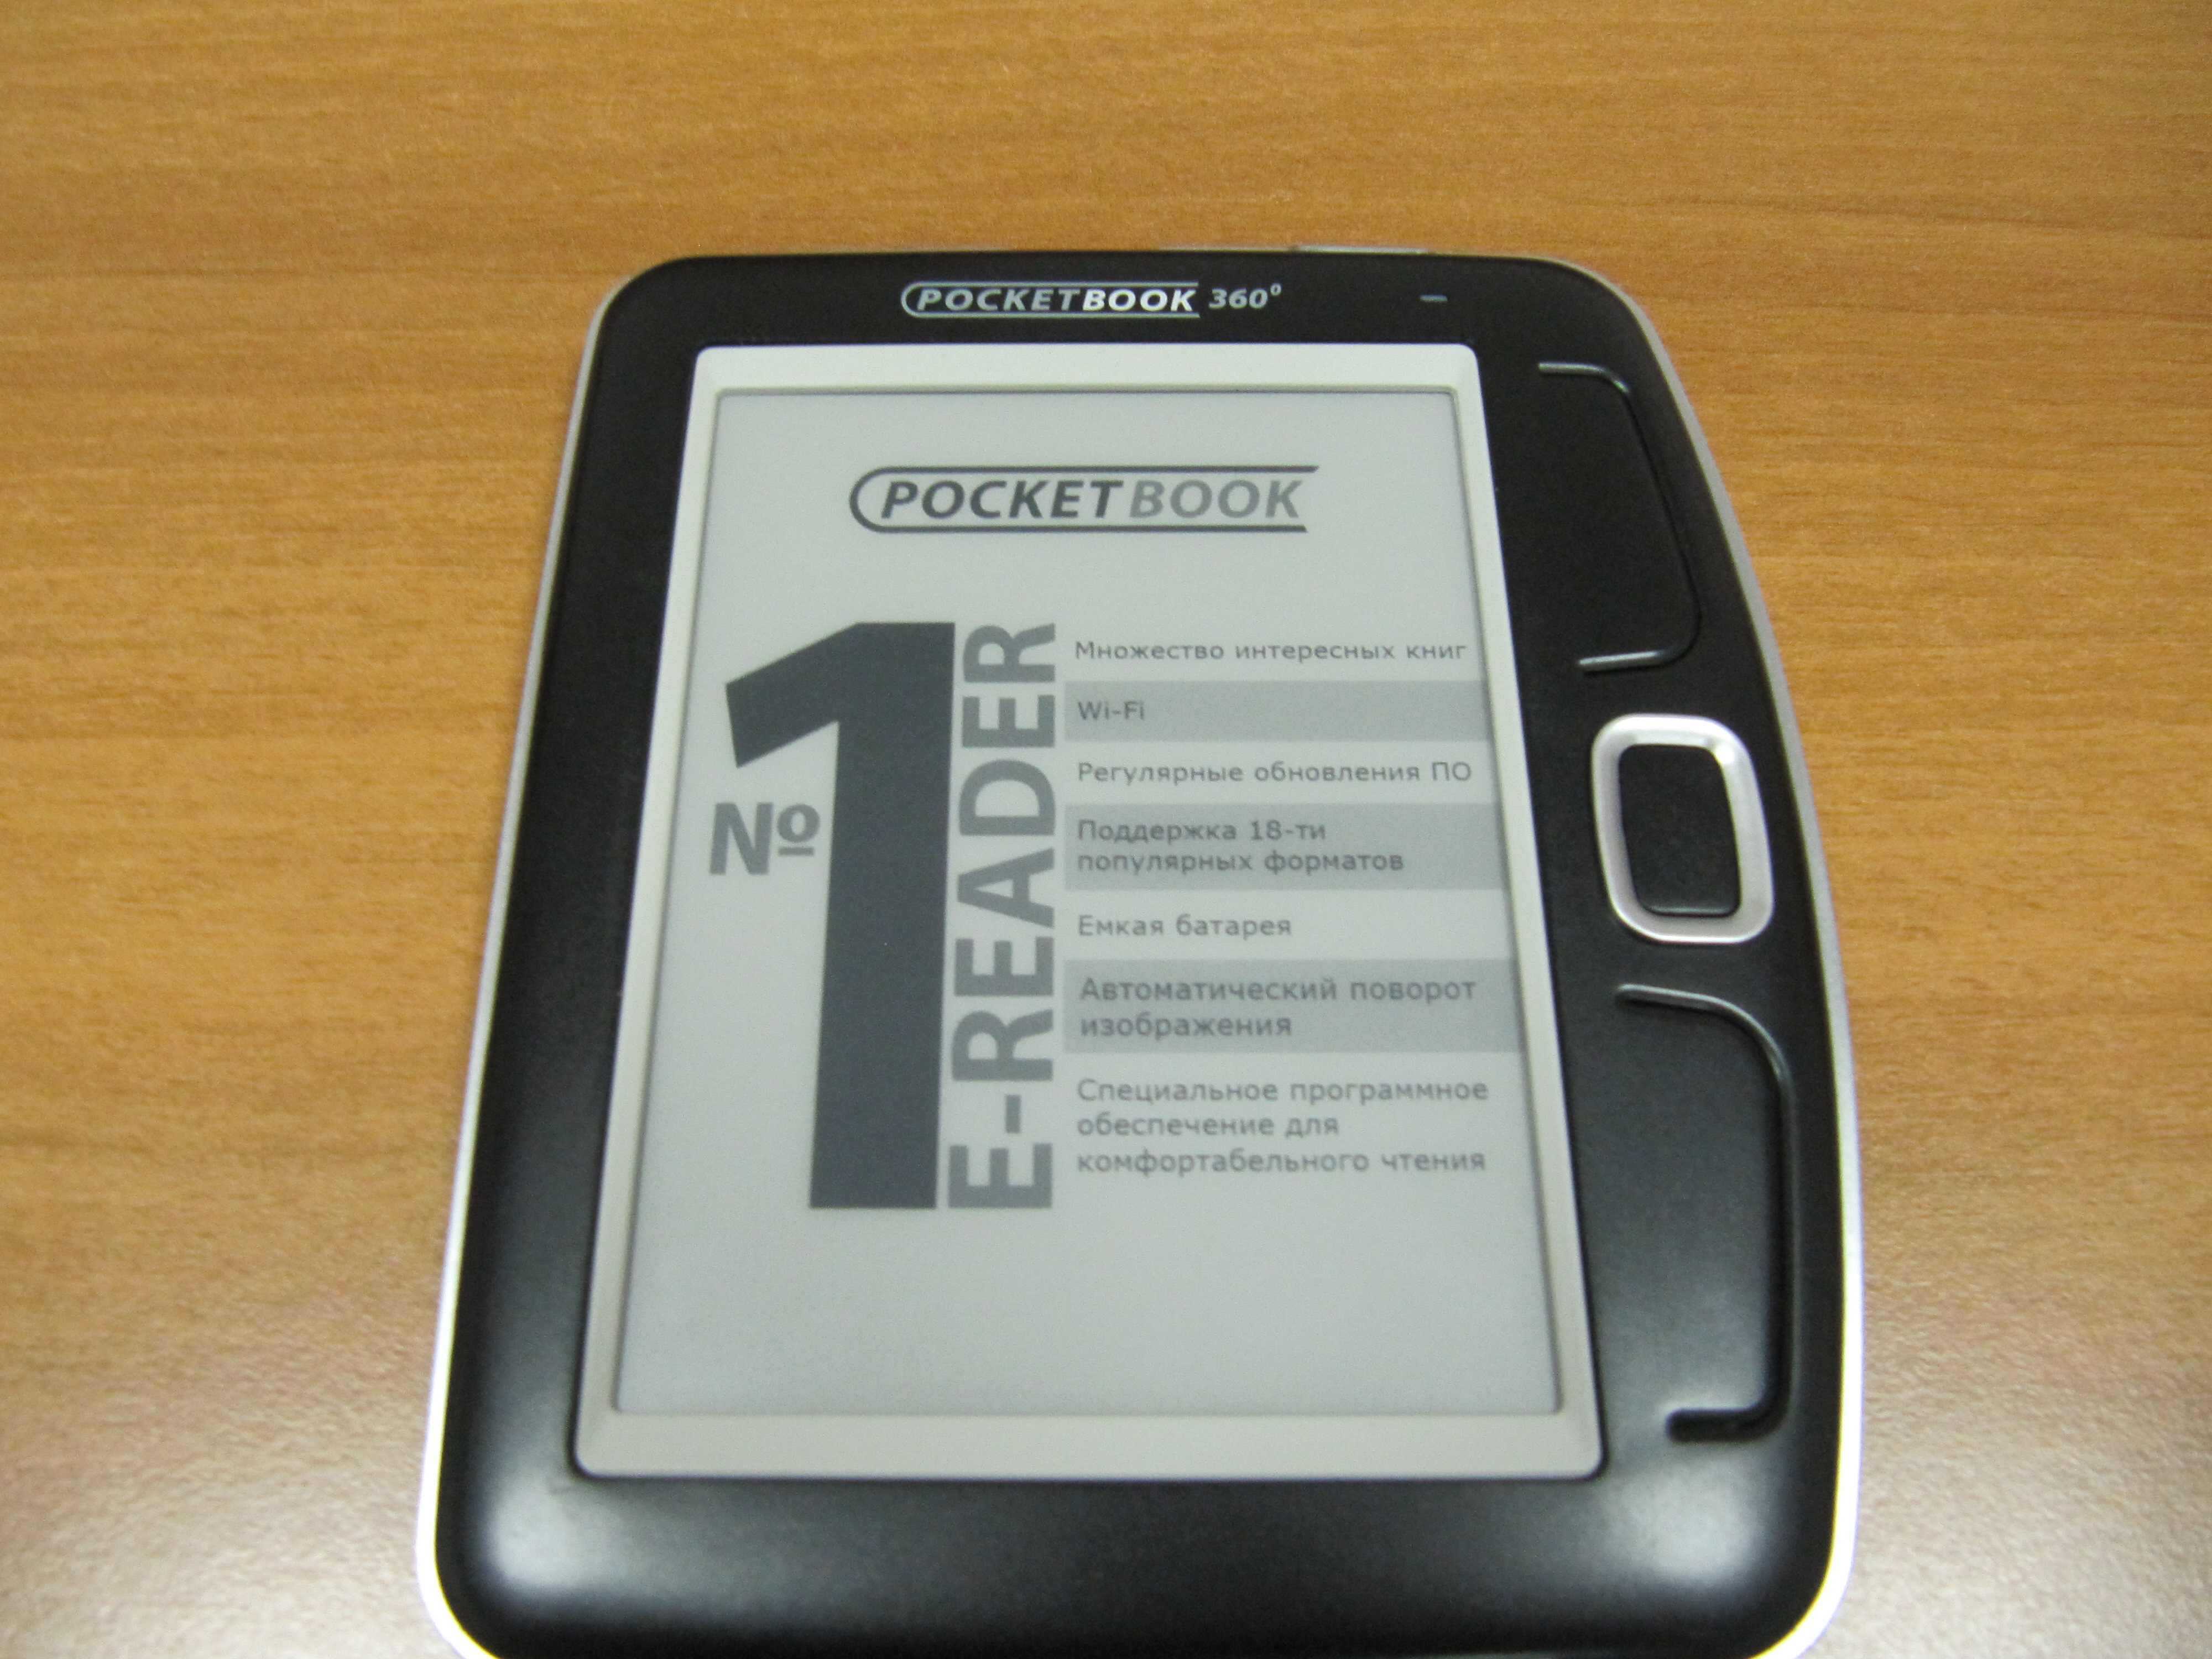 Электронный книга PocketBook 360 plus - подробные характеристики обзоры видео фото Цены в интернет-магазинах где можно купить электронную книгу PocketBook 360 plus